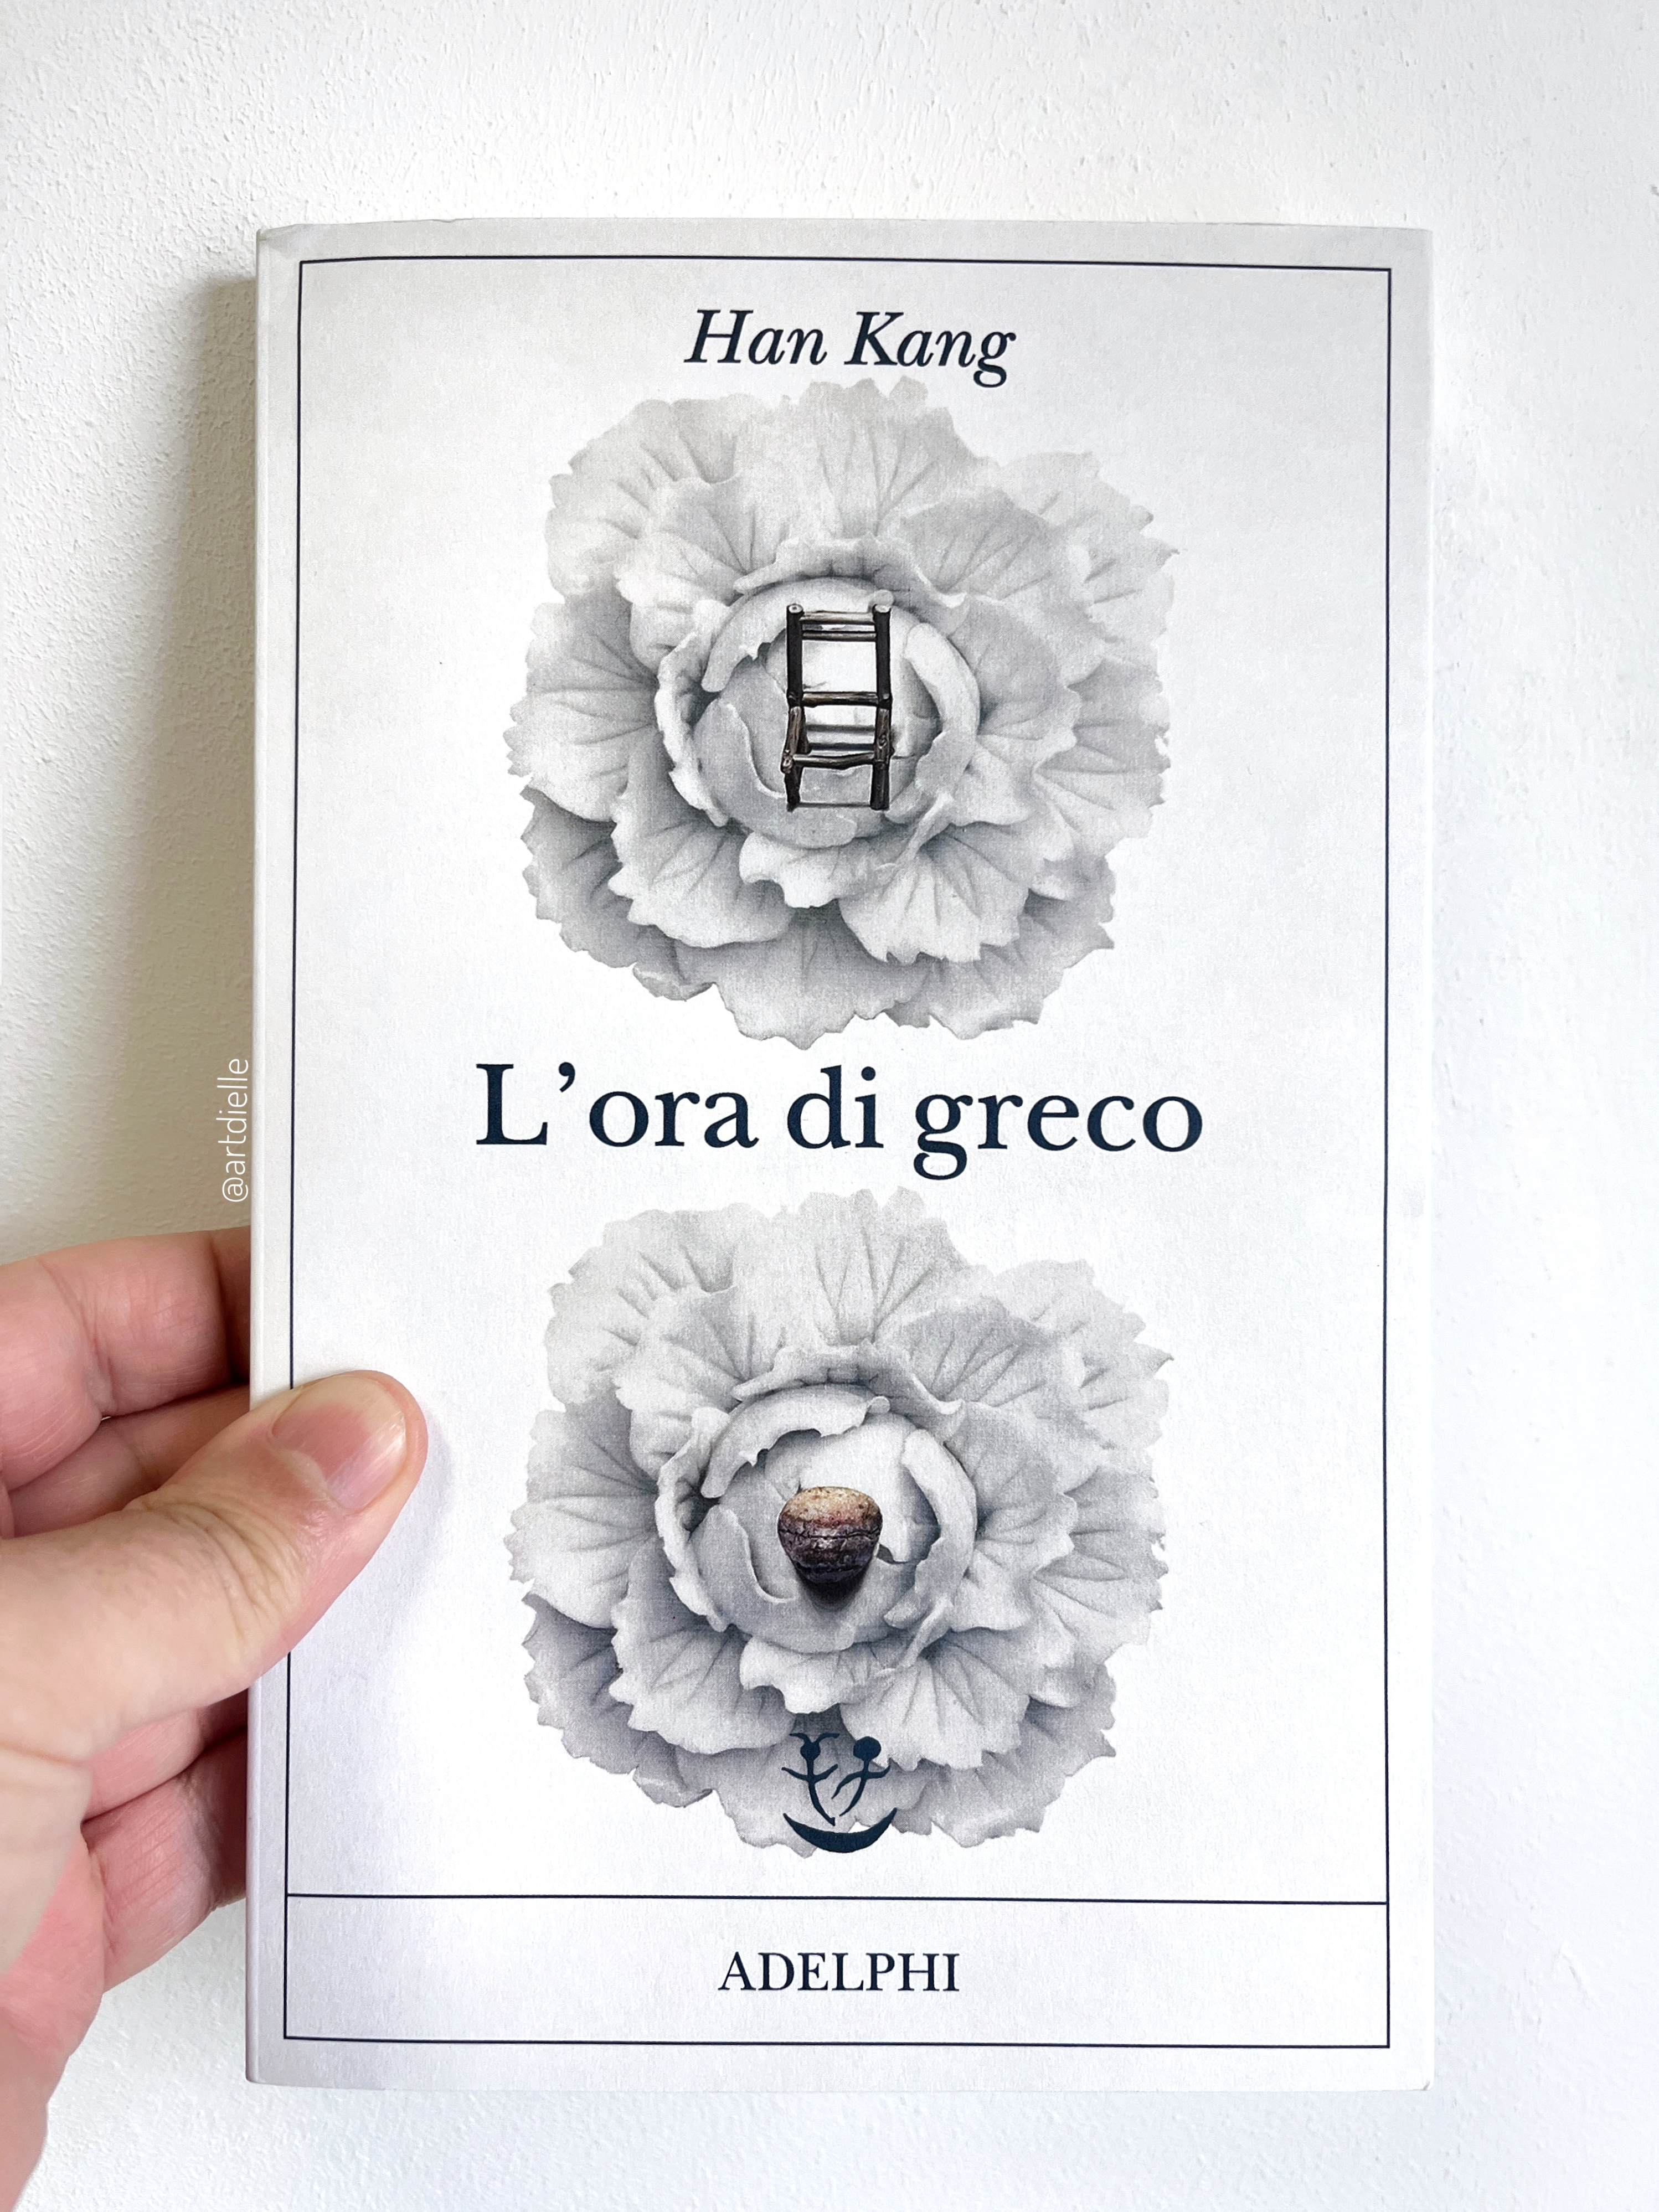 Arturo Dielle on X: Con L'ora di greco la coreana Han Kang